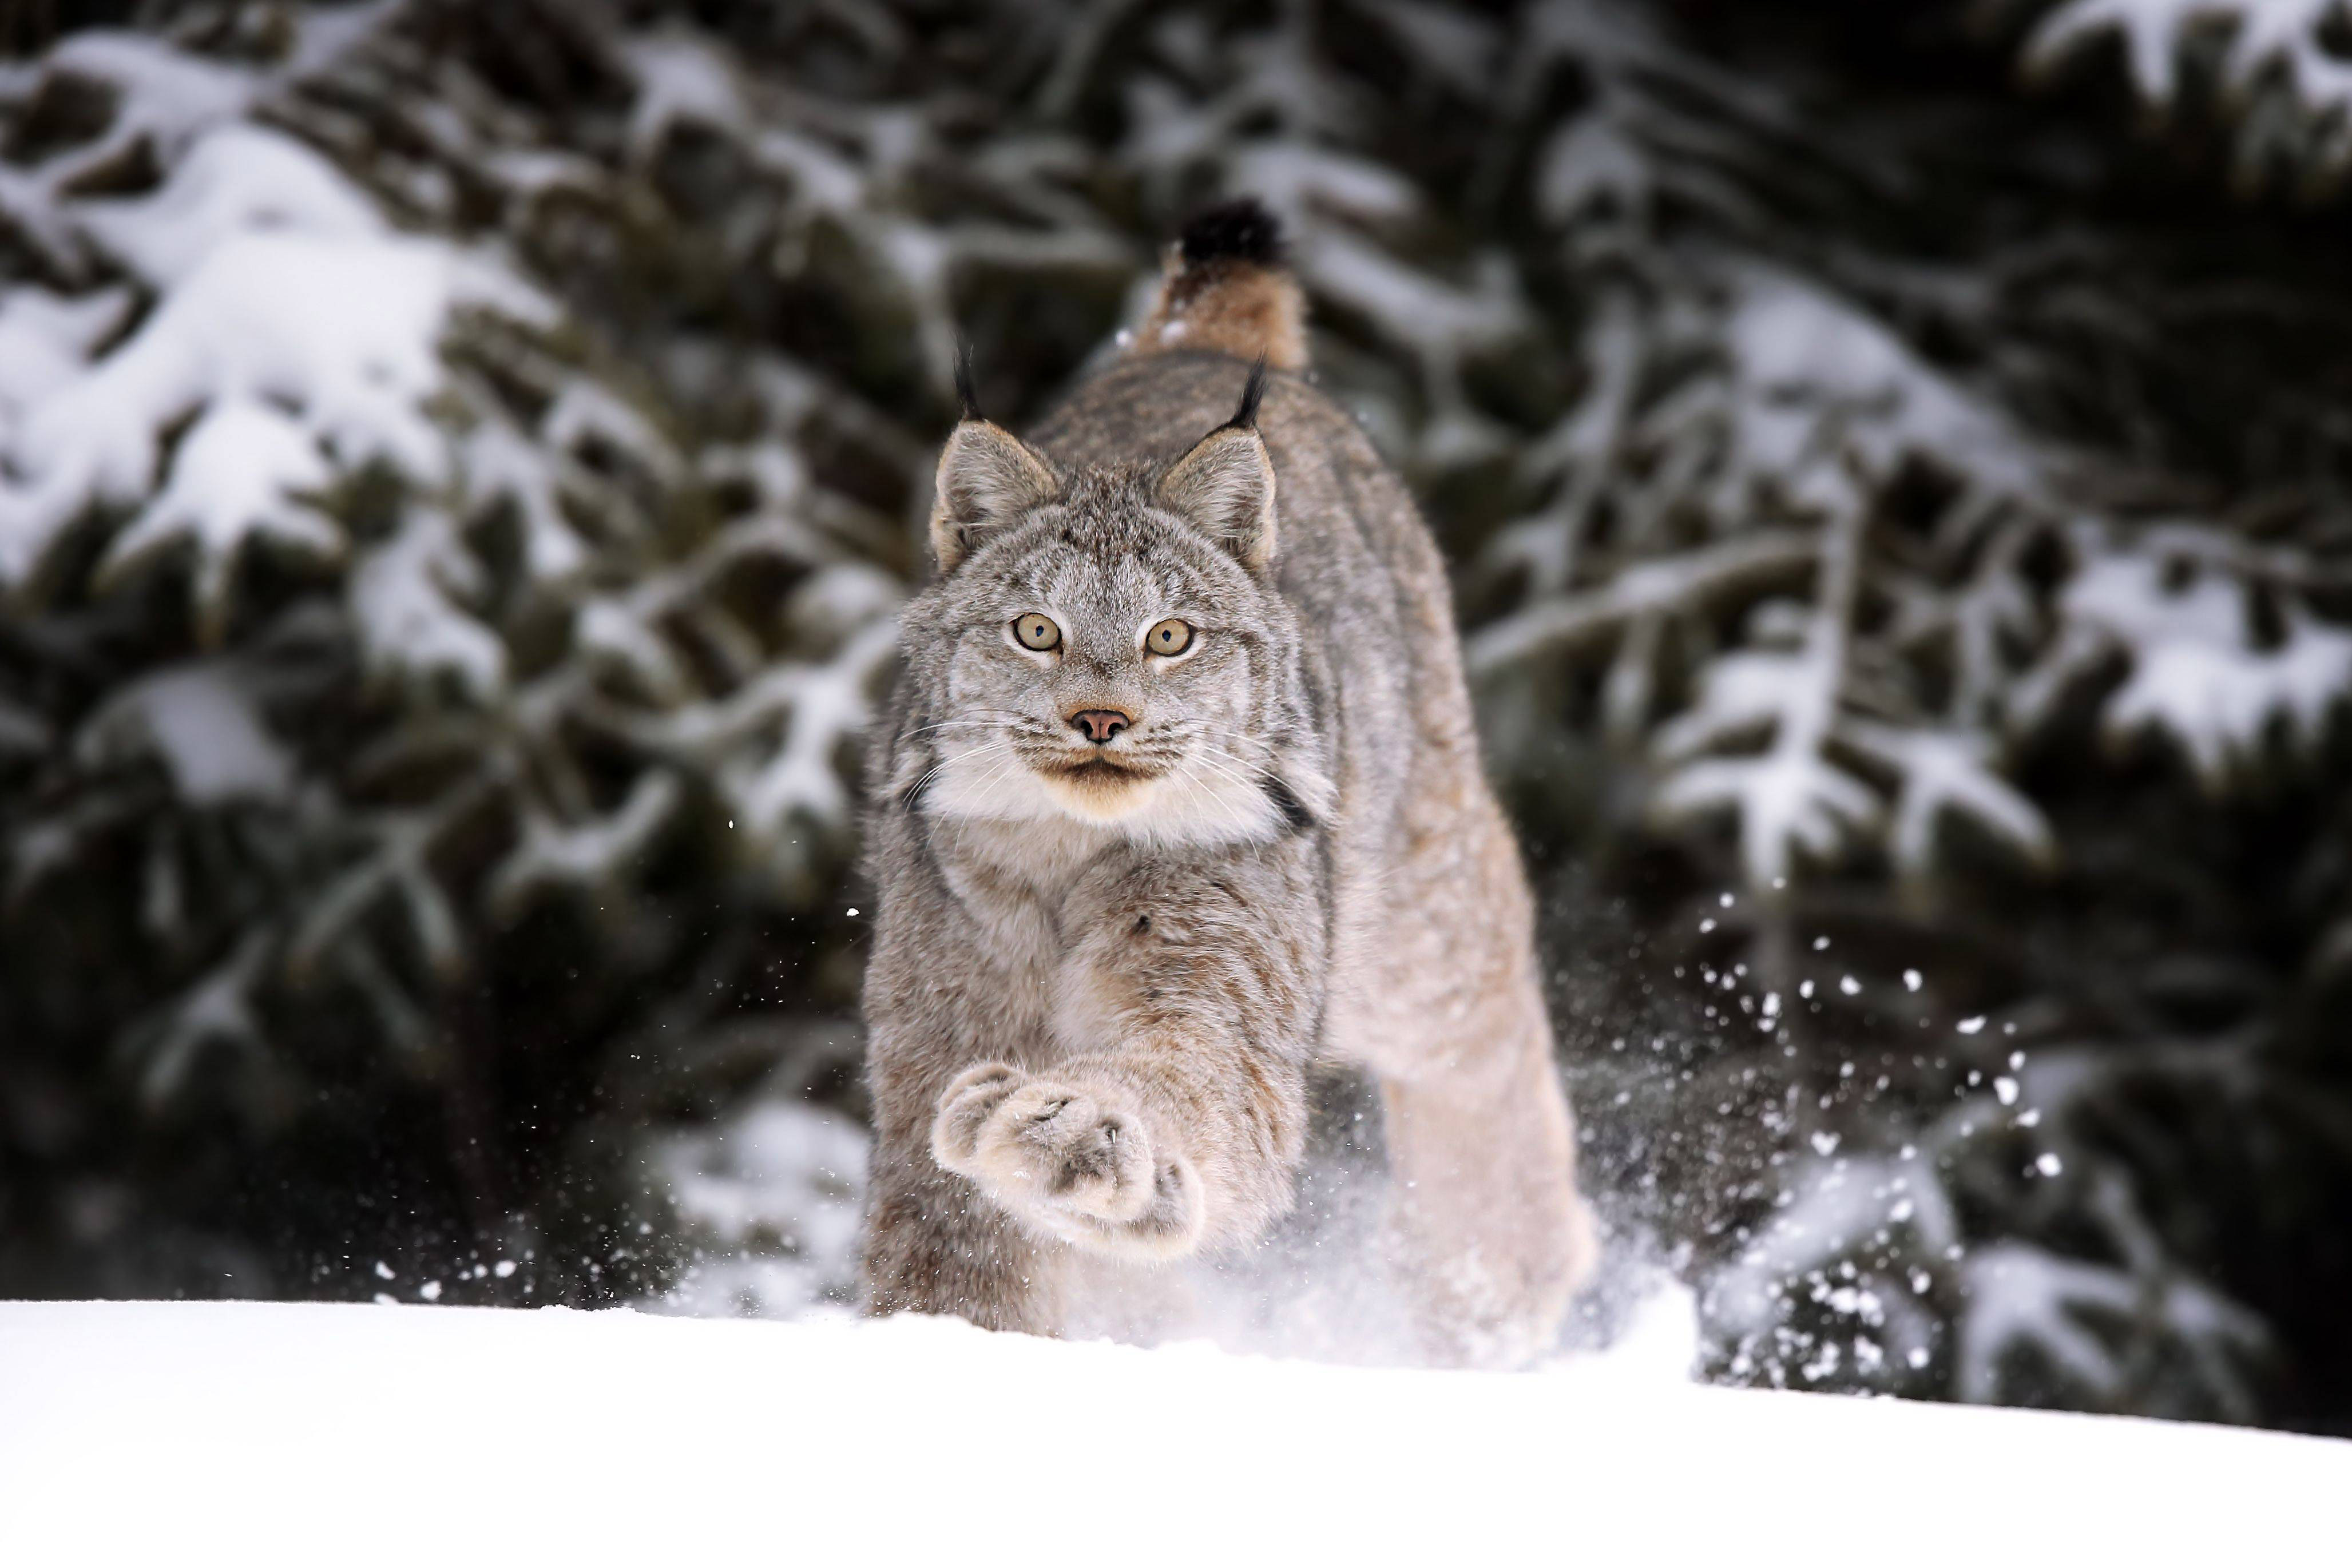 A lynx runs through snow toward the camera.